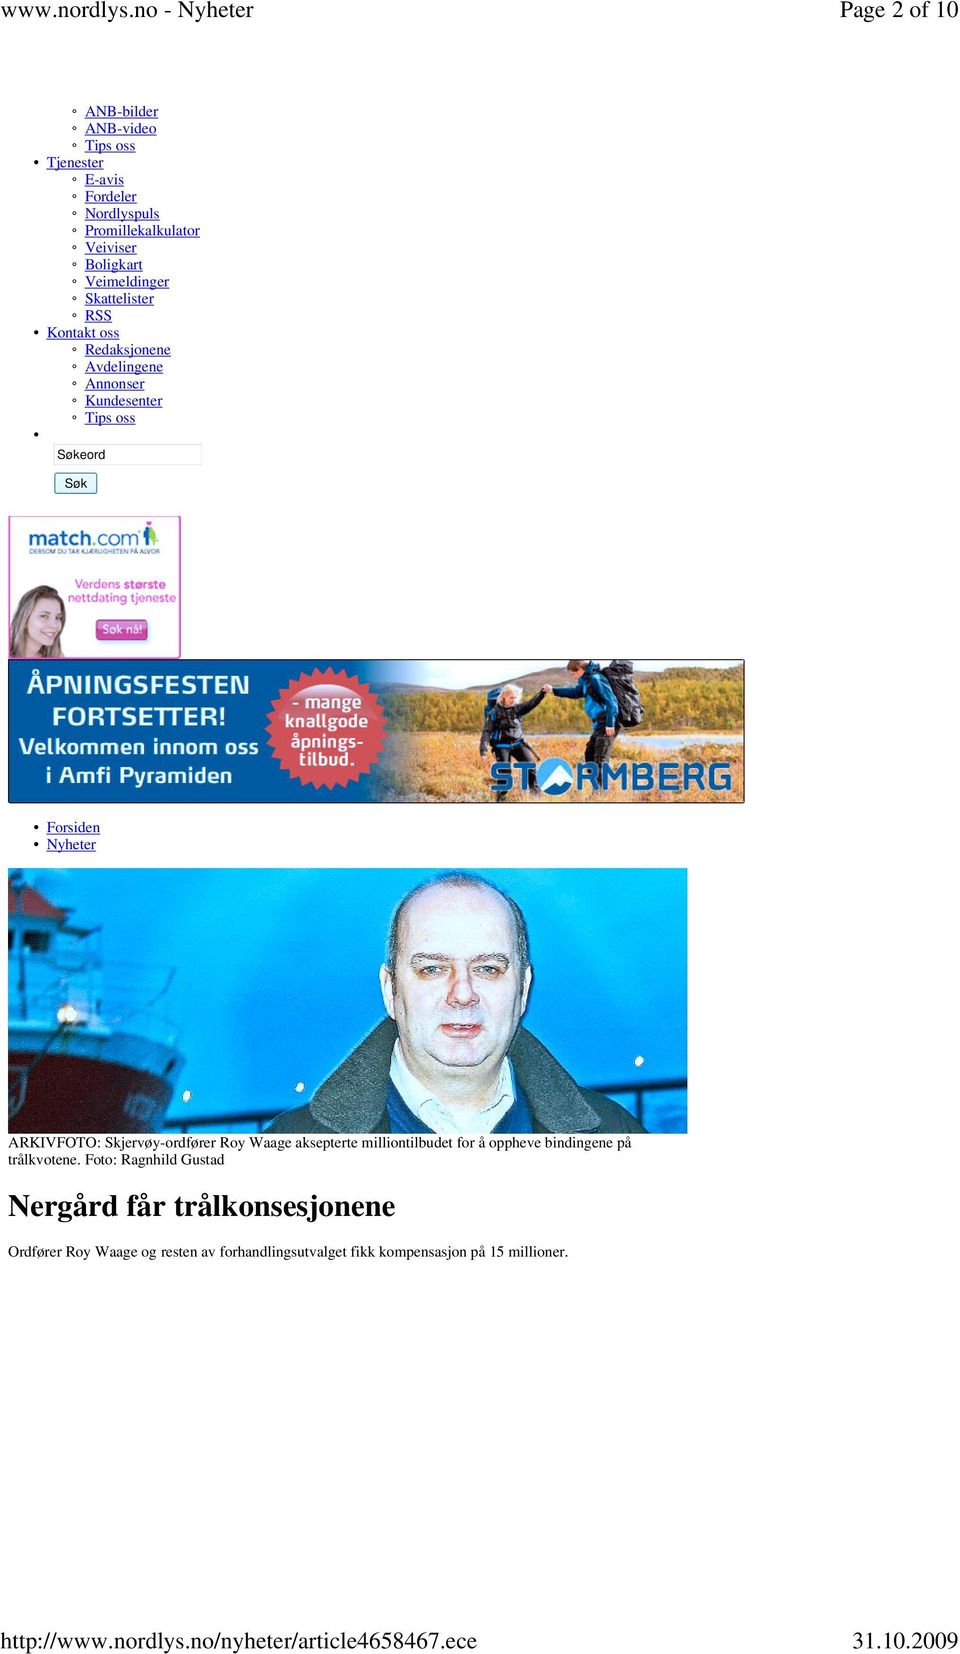 Nyheter ARKIVFOTO: Skjervøy-ordfører Roy Waage aksepterte milliontilbudet for å oppheve bindingene på trålkvotene.